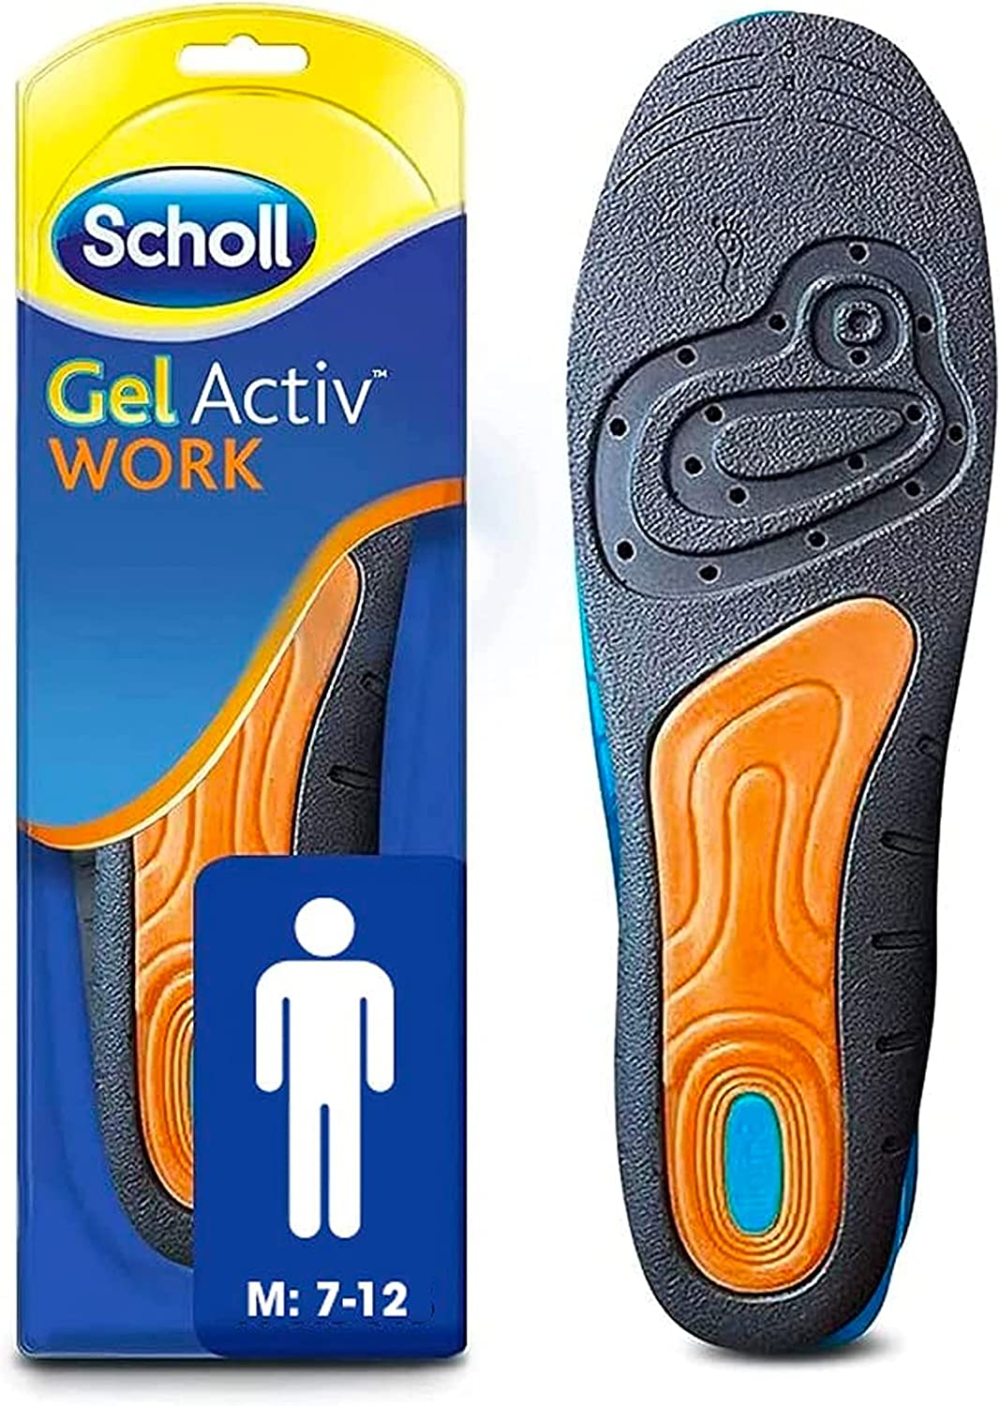 gel active work insoles for men